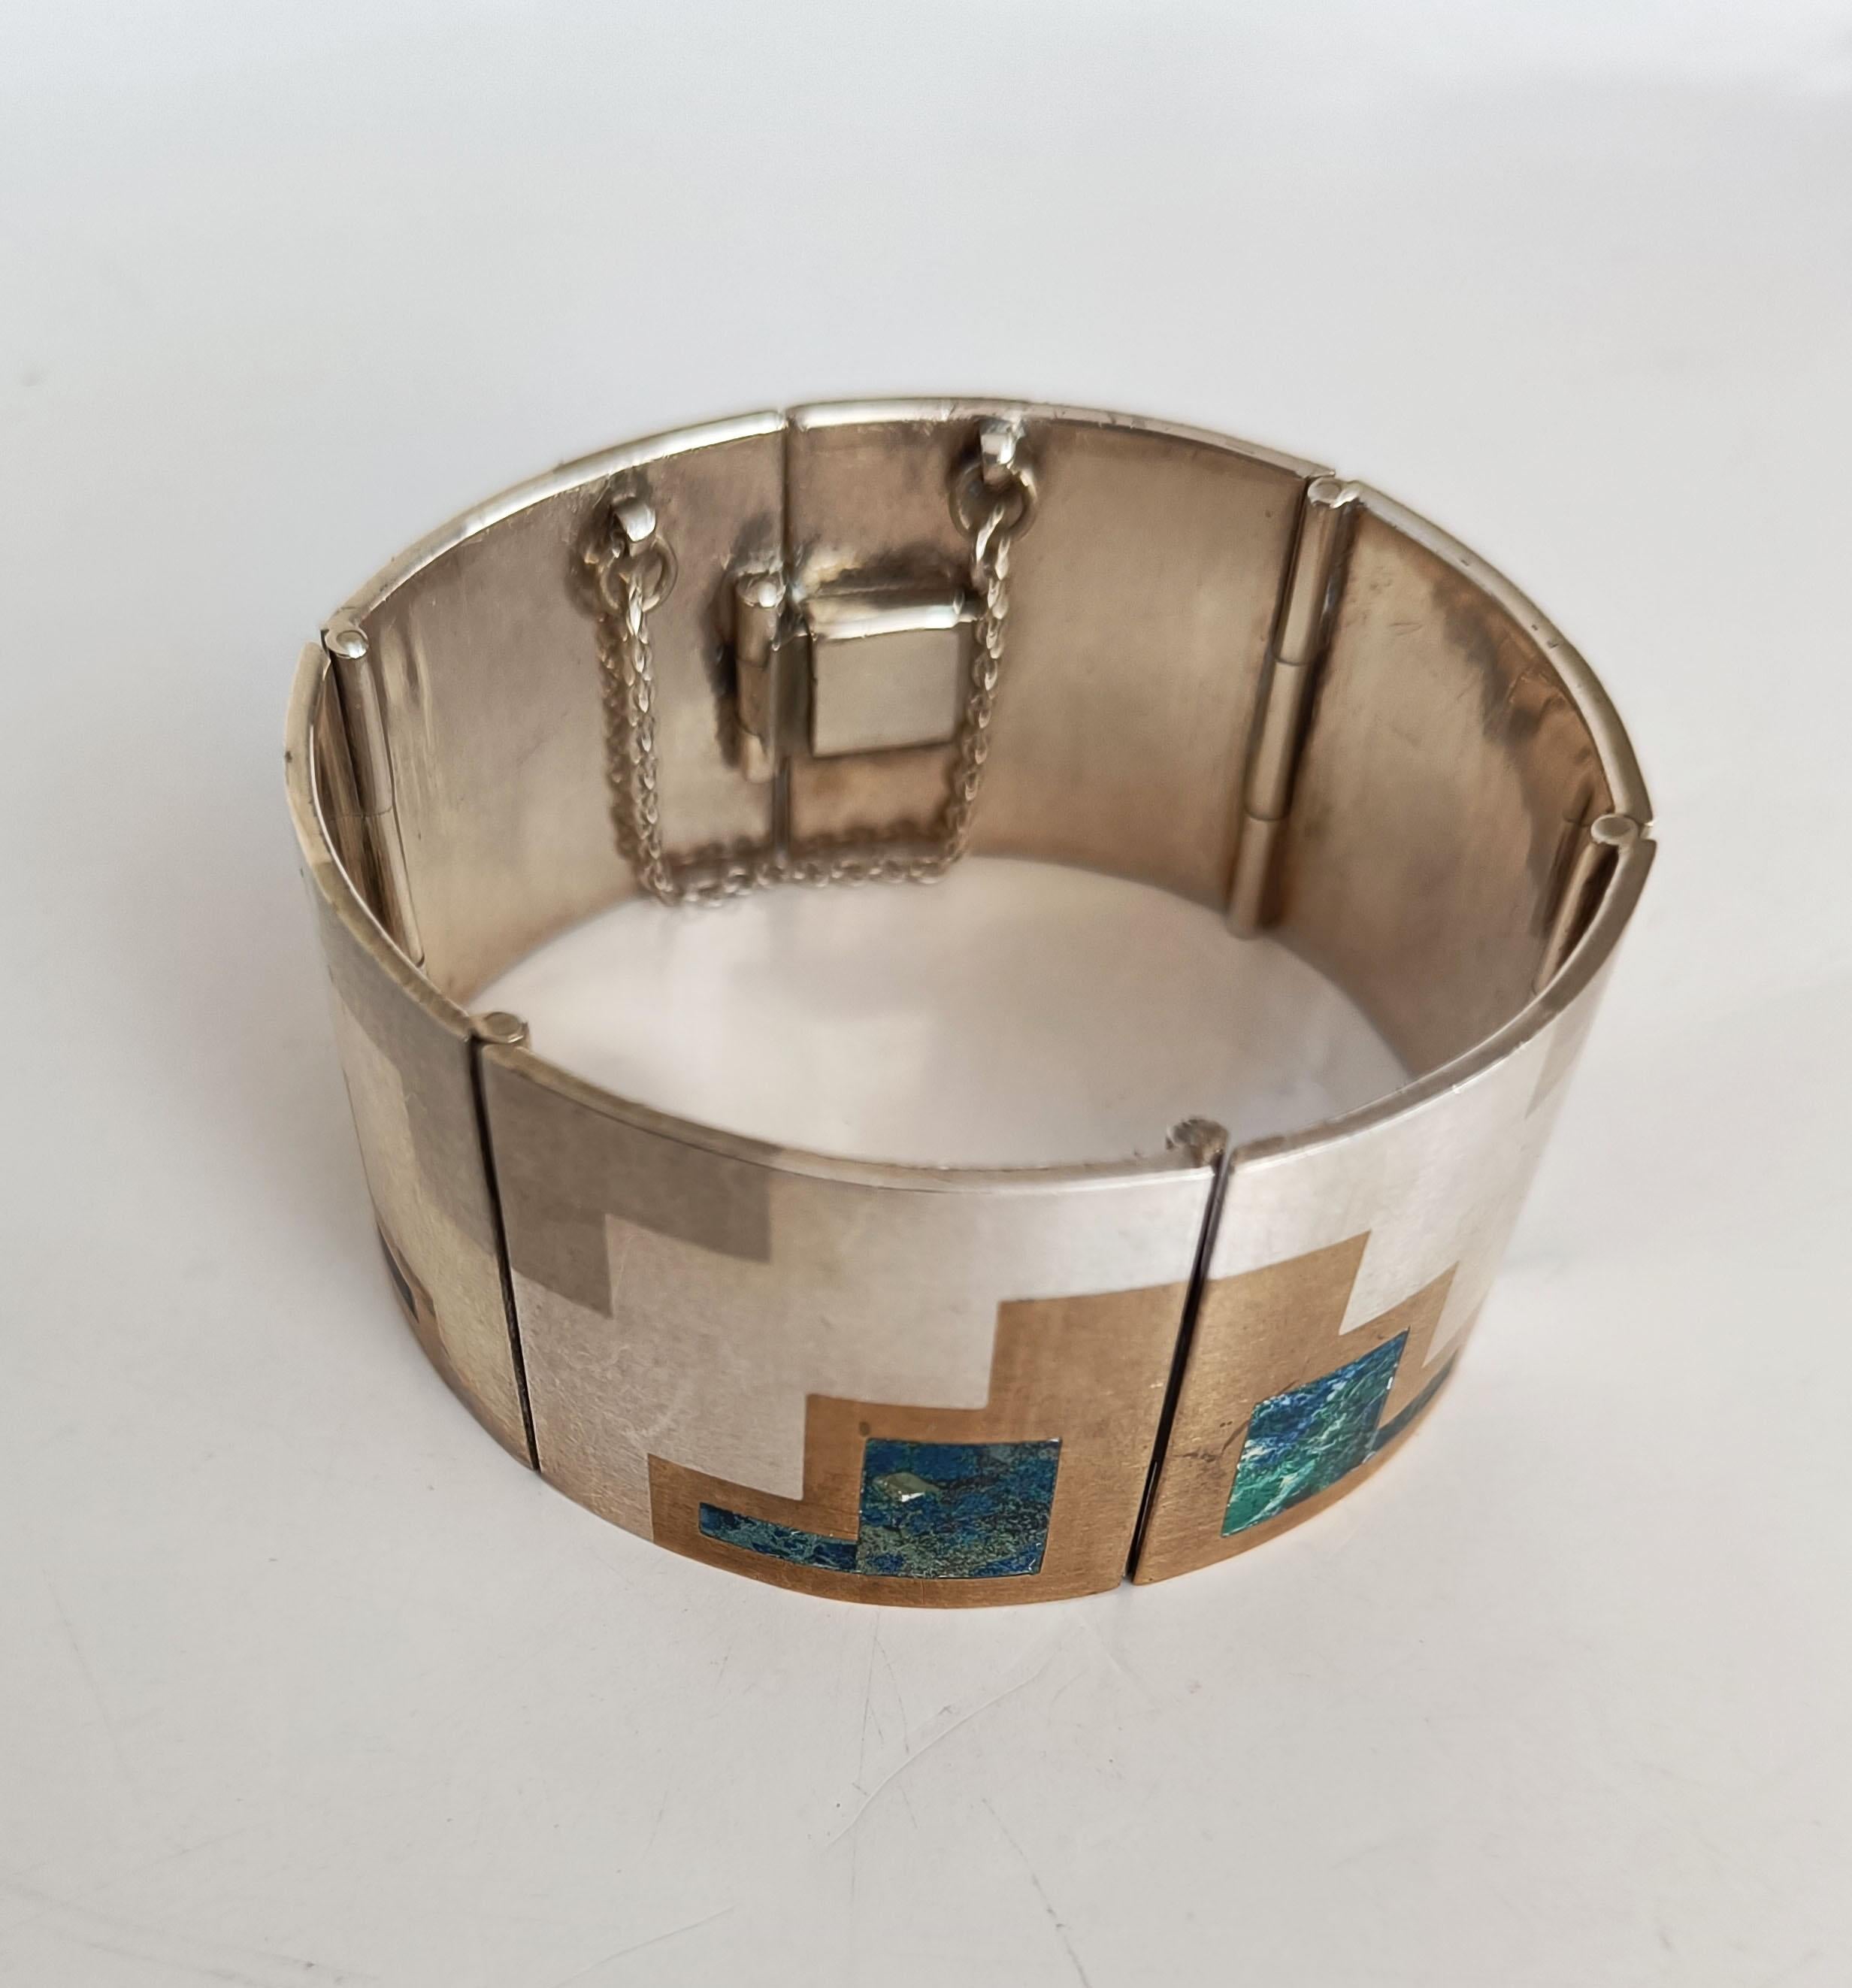 Schöne Vintage Mexican Taxco Silber Modernist Design Armband mit gemischten Metallen und Abalone-Inlays
Markiert  JL Metales 925 Sterling Marke
1960er Jahre
Guter Zustand.